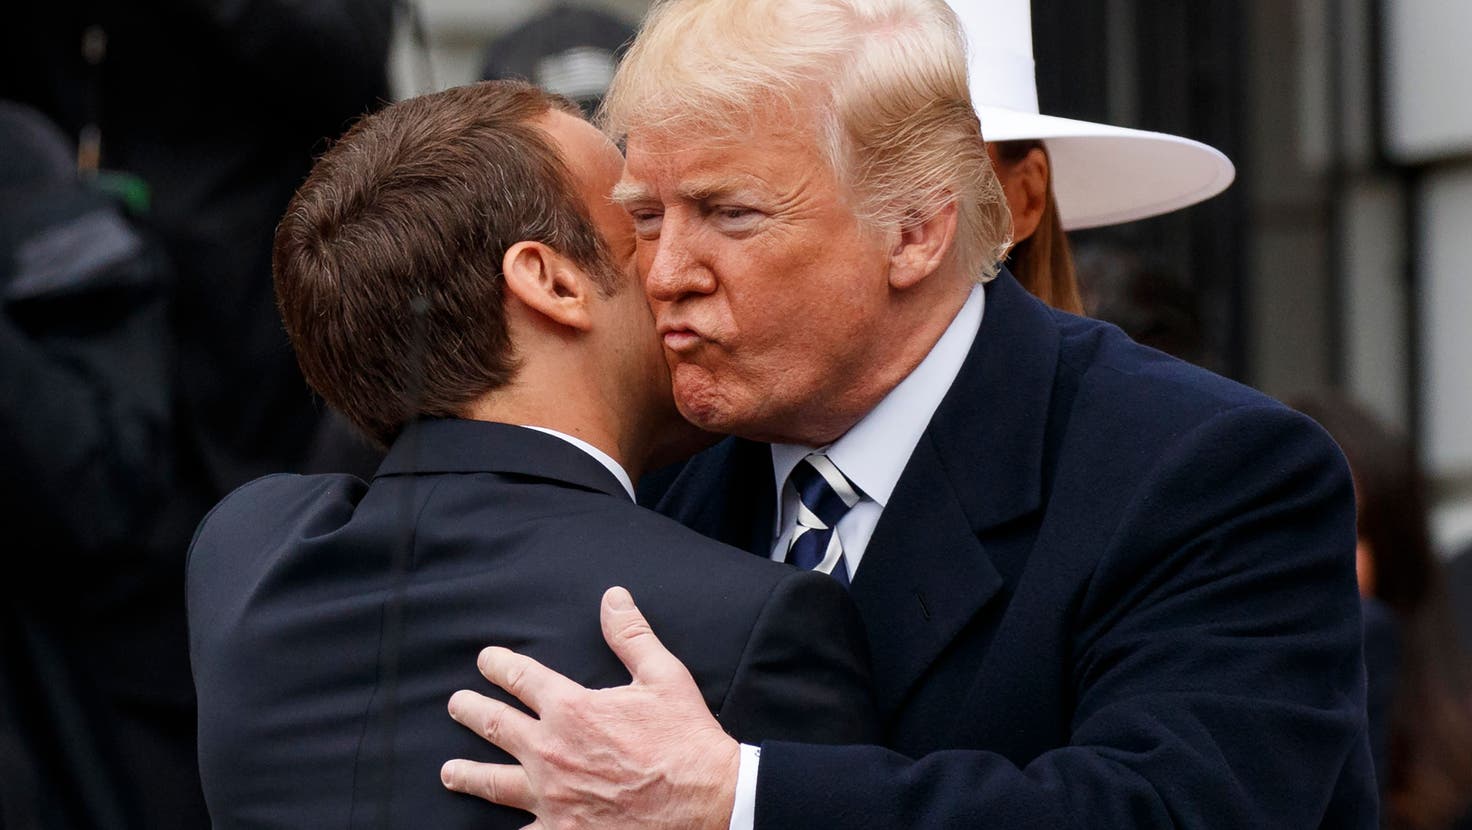 Der damalige Präsident Donald Trump begrüsst im April 2018 seinen französischen Amtskollegen Emmanuel Macron mit einem Küsschen. Unter den Dokumenten, die Trump nach Ende seiner Amtszeit aus dem Weissen Haus mitnahm, befand sich auch eines mit «Informationen» über Macron. (Keystone)